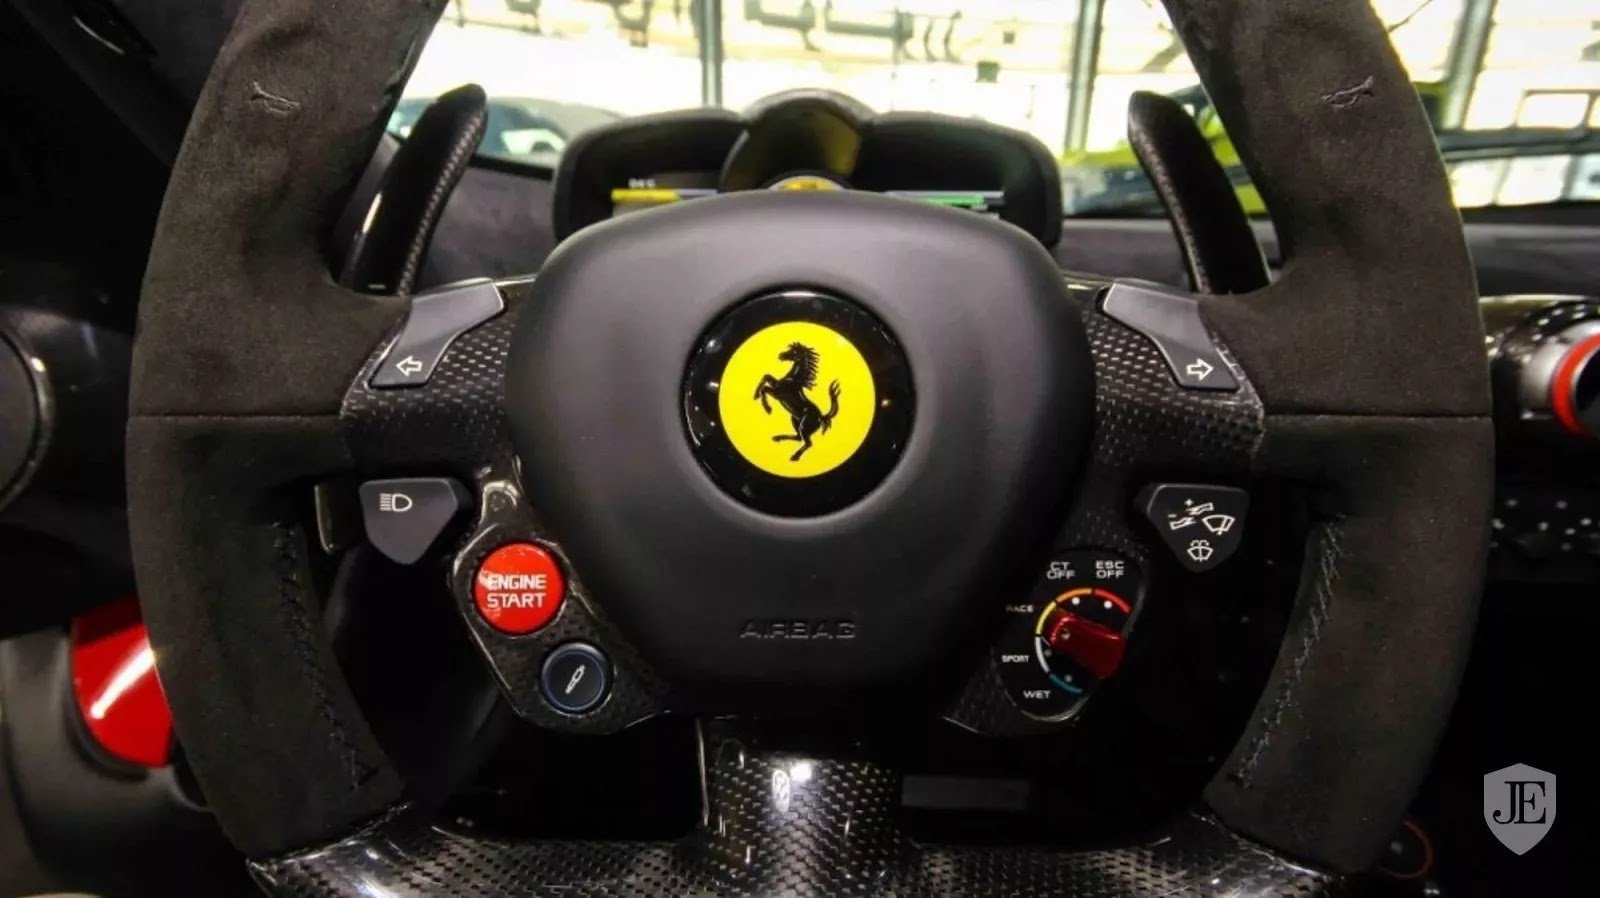 Dubajský autosalon GTR Motors nabízí k prodeji zcela nové Ferrari LaFerrari Aperta. Jeho cena je však závratně vysoká